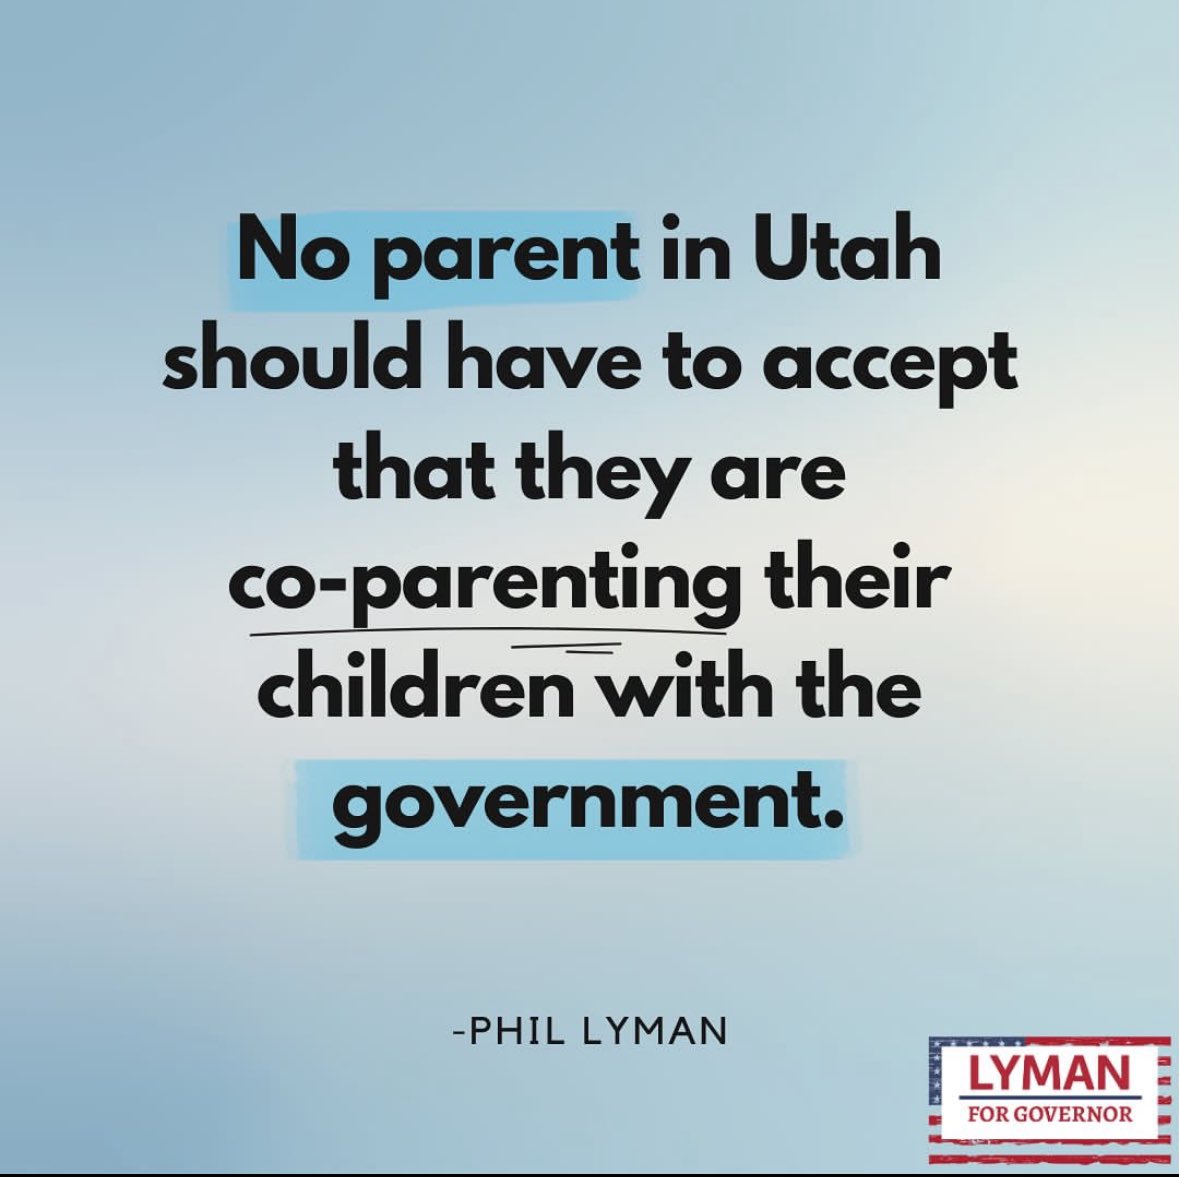 A foundational principle of my campaign. 👇
#utpol
#Lymanforgovernor